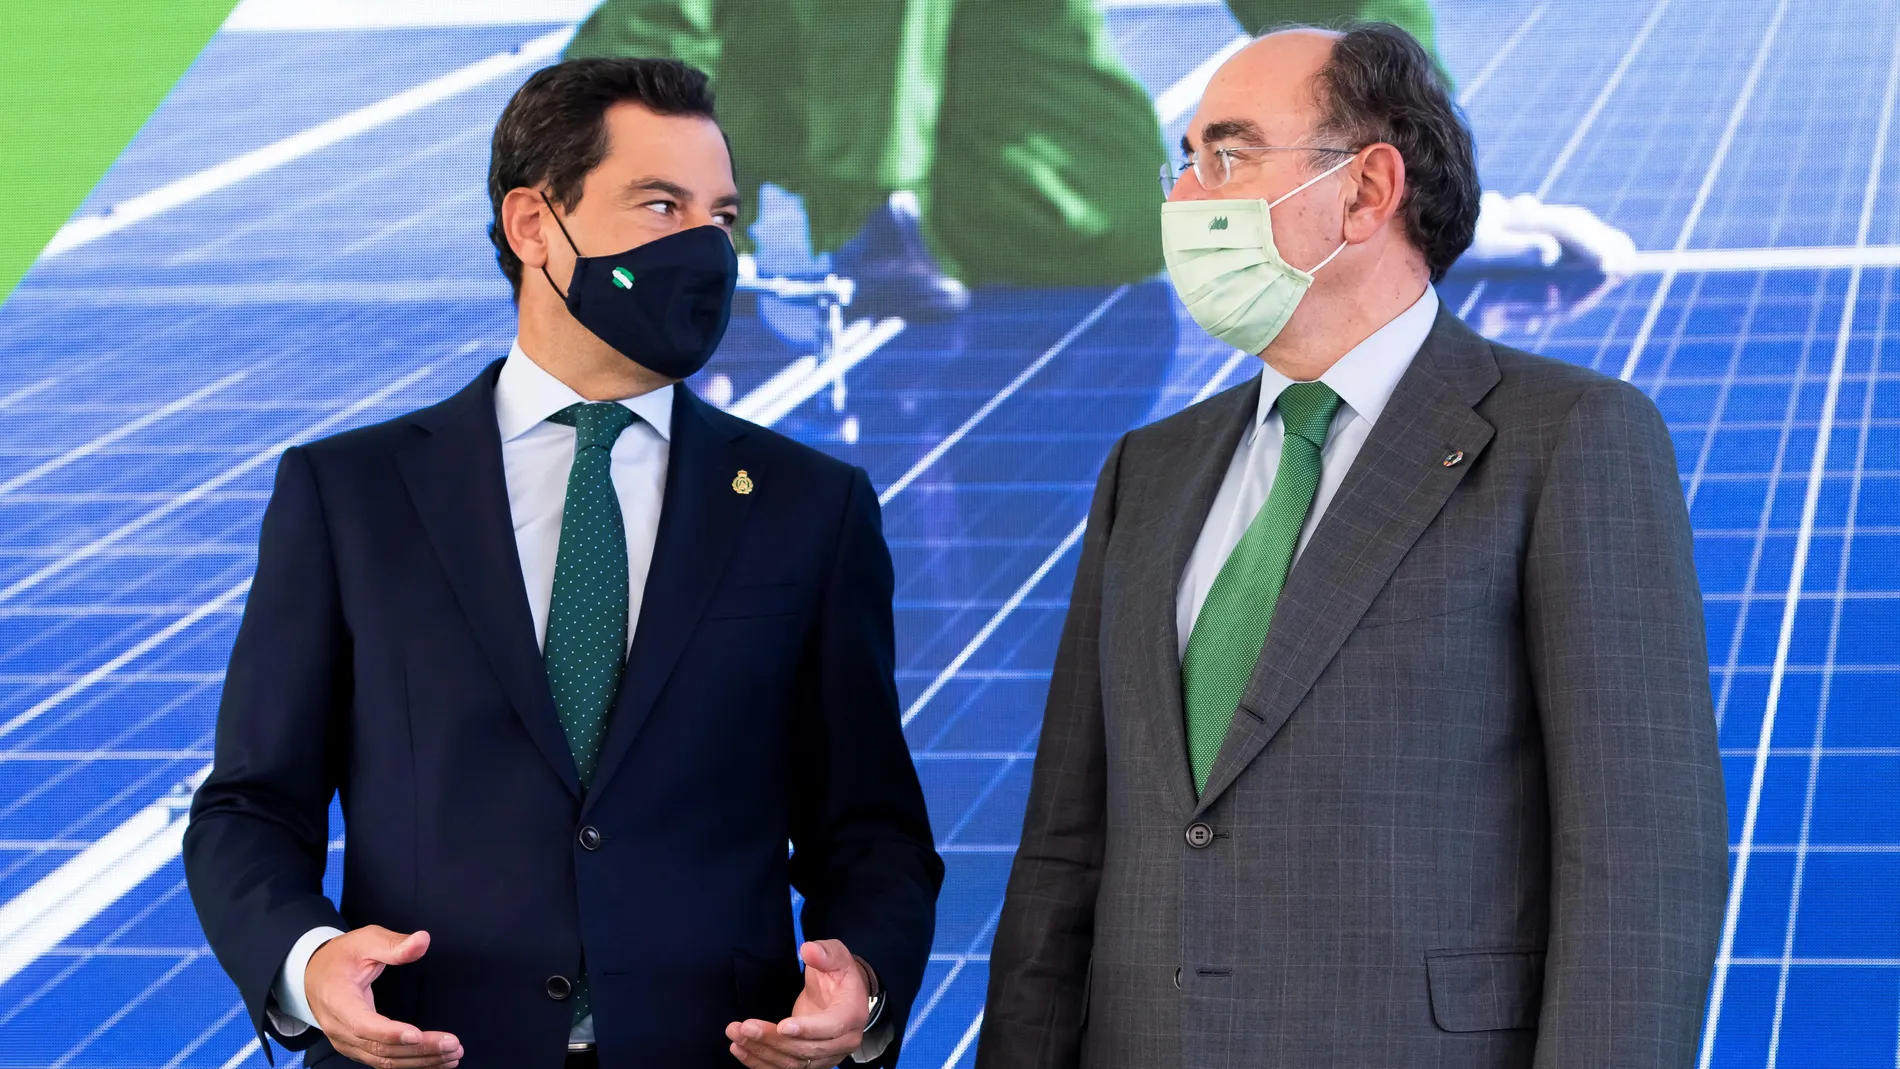 El presidente de la Junta de Andalucía, Juanma Moreno (i), junto al presidente de Iberdrola, José Ignacio Sánchez, durante el acto de inauguración de la planta Andévalo, en Huelva